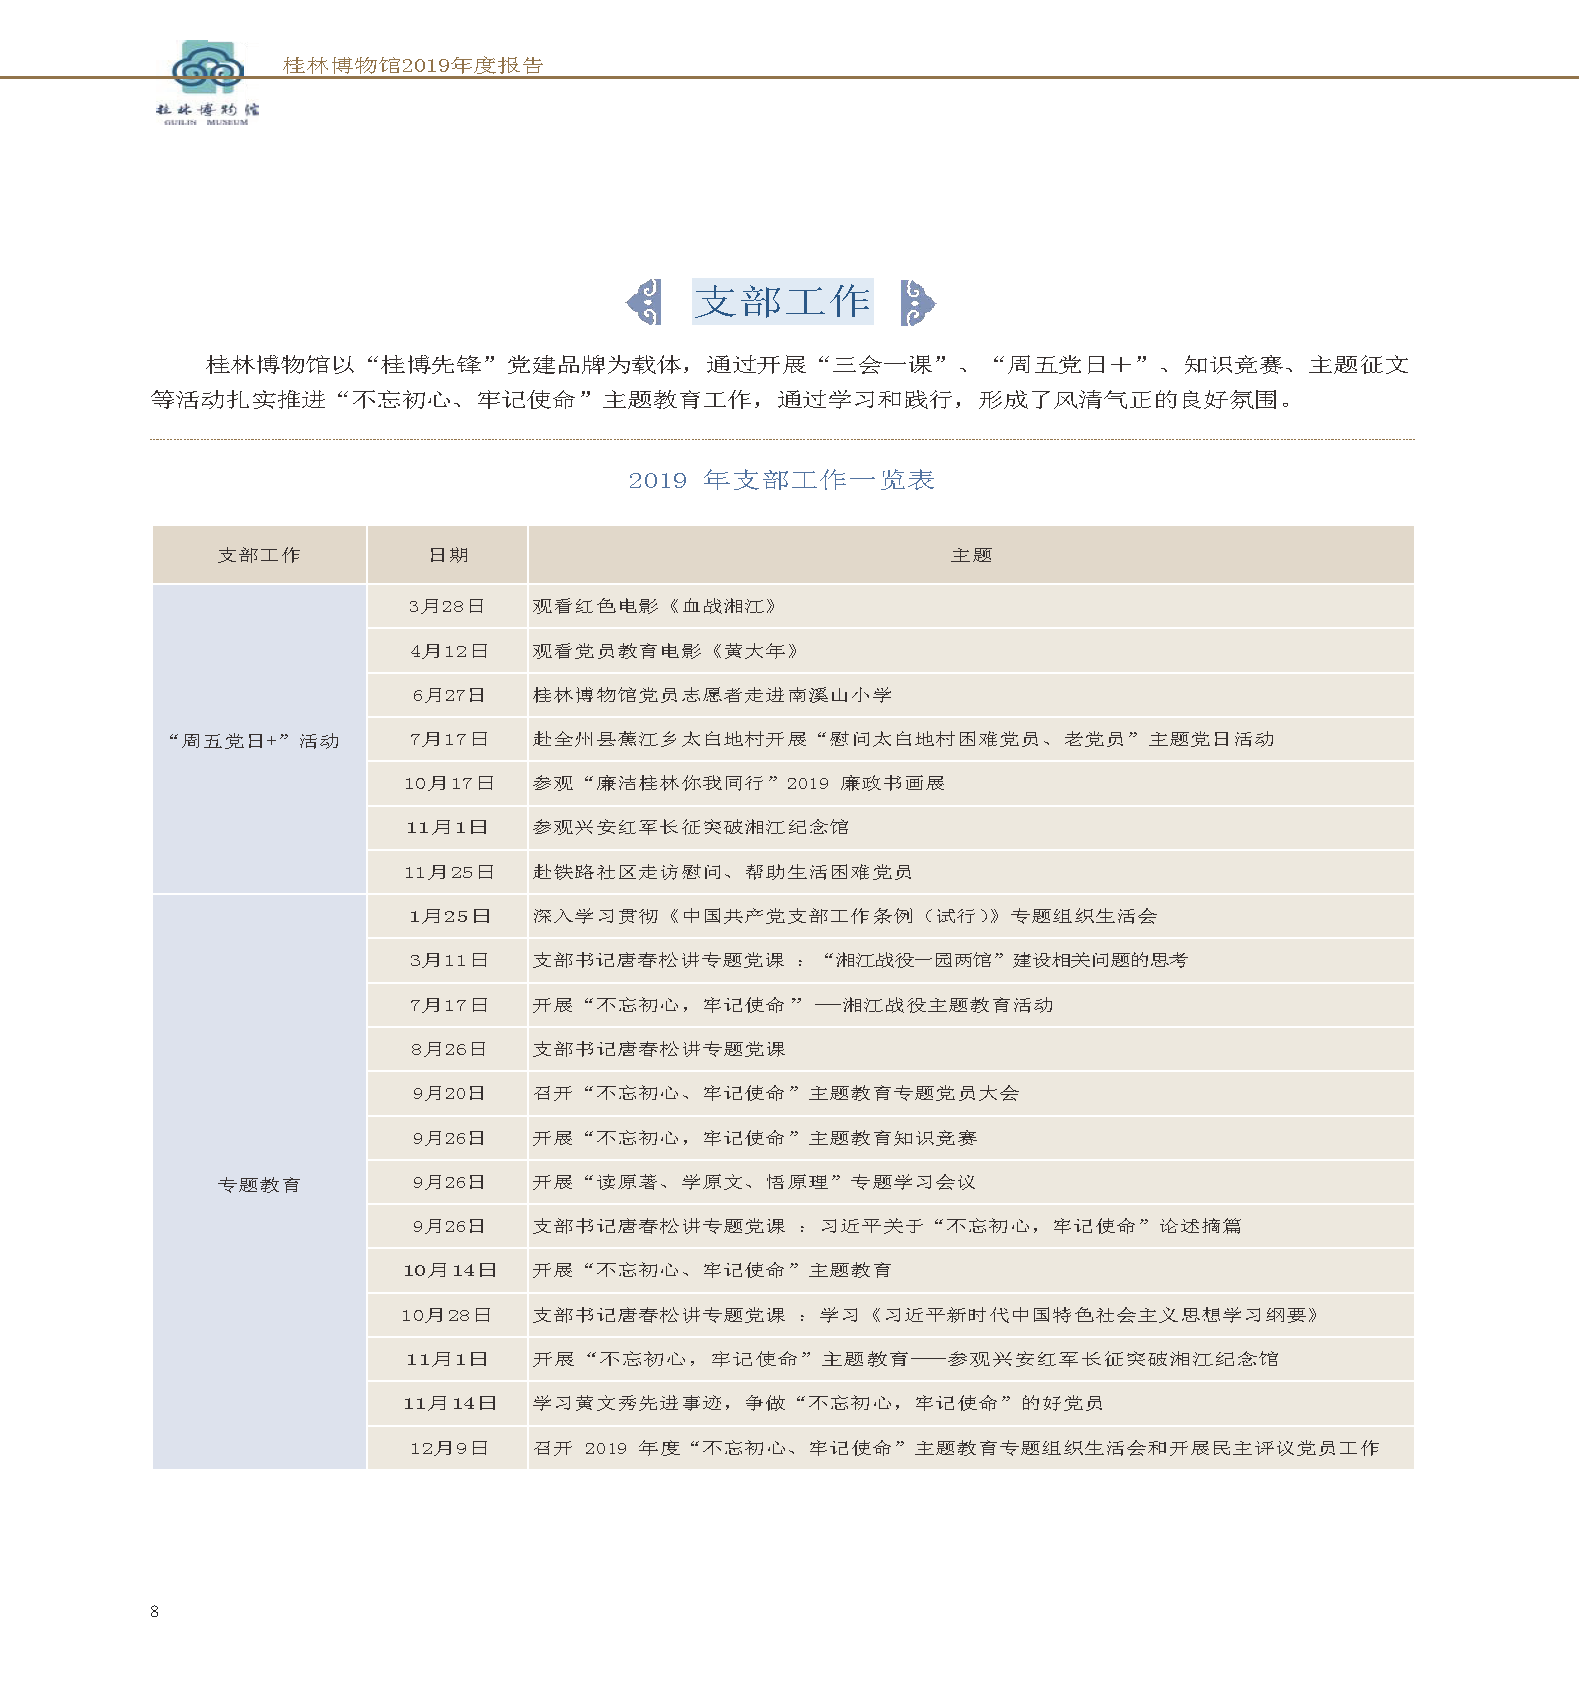 桂林博物馆2019年度报告.pdf_页面_010.png